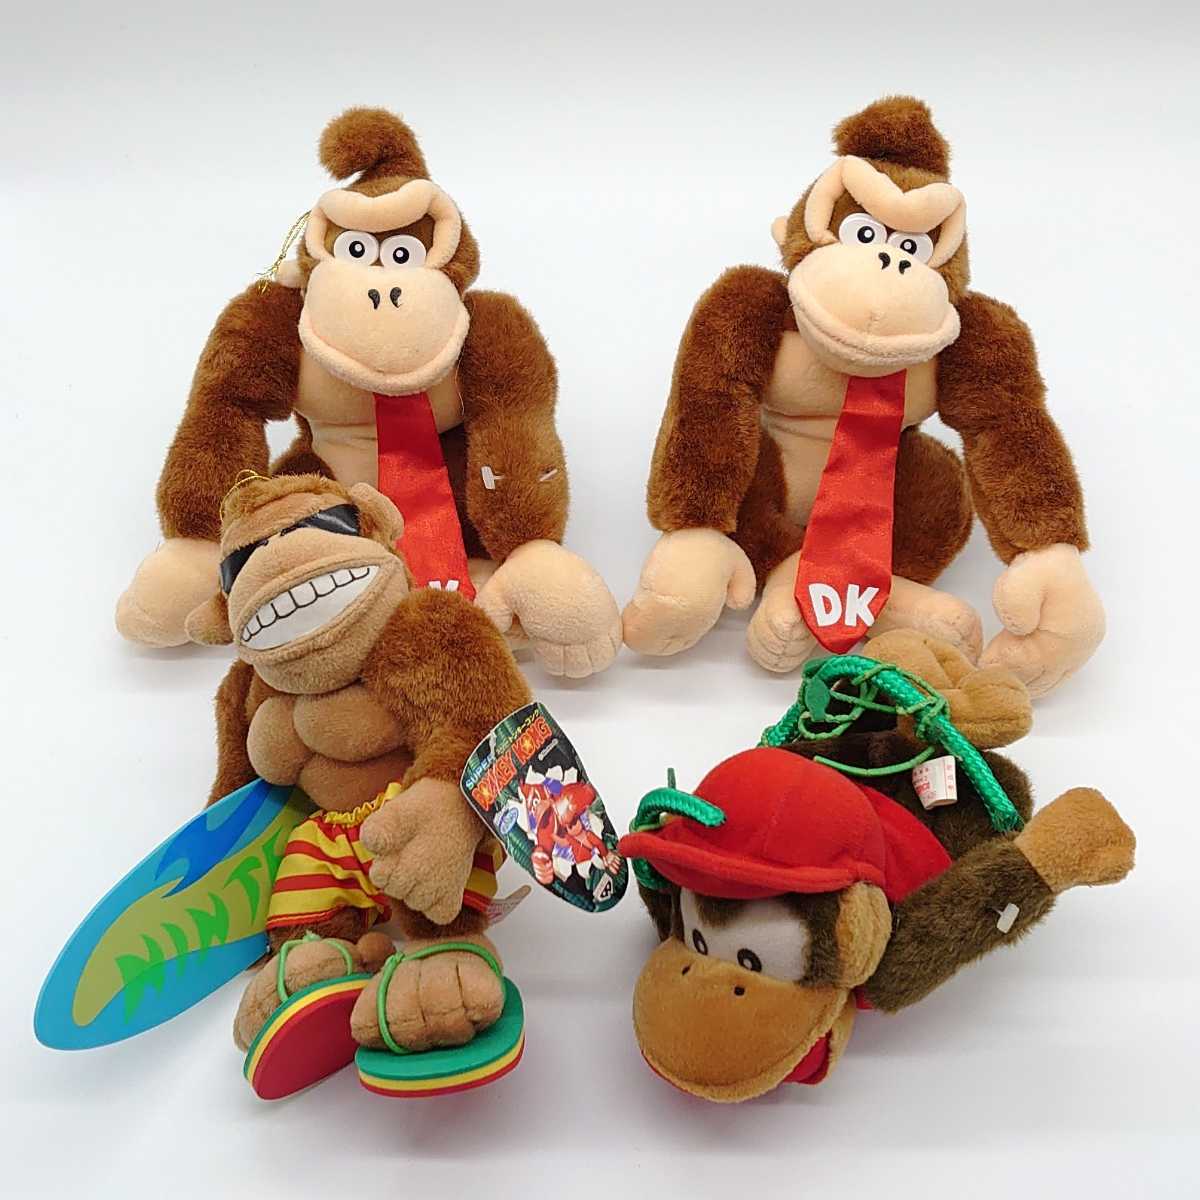 42 割引スーパーセール期間限定 Super Donkey Kong スーパードンキーコング Banpresto バンプレスト ぬいぐるみ 人形 非売品 景品 当時物 レトロ まとめ売り Dn 22x399 キャラクター ぬいぐるみ おもちゃ ゲーム Bussinfoods Com